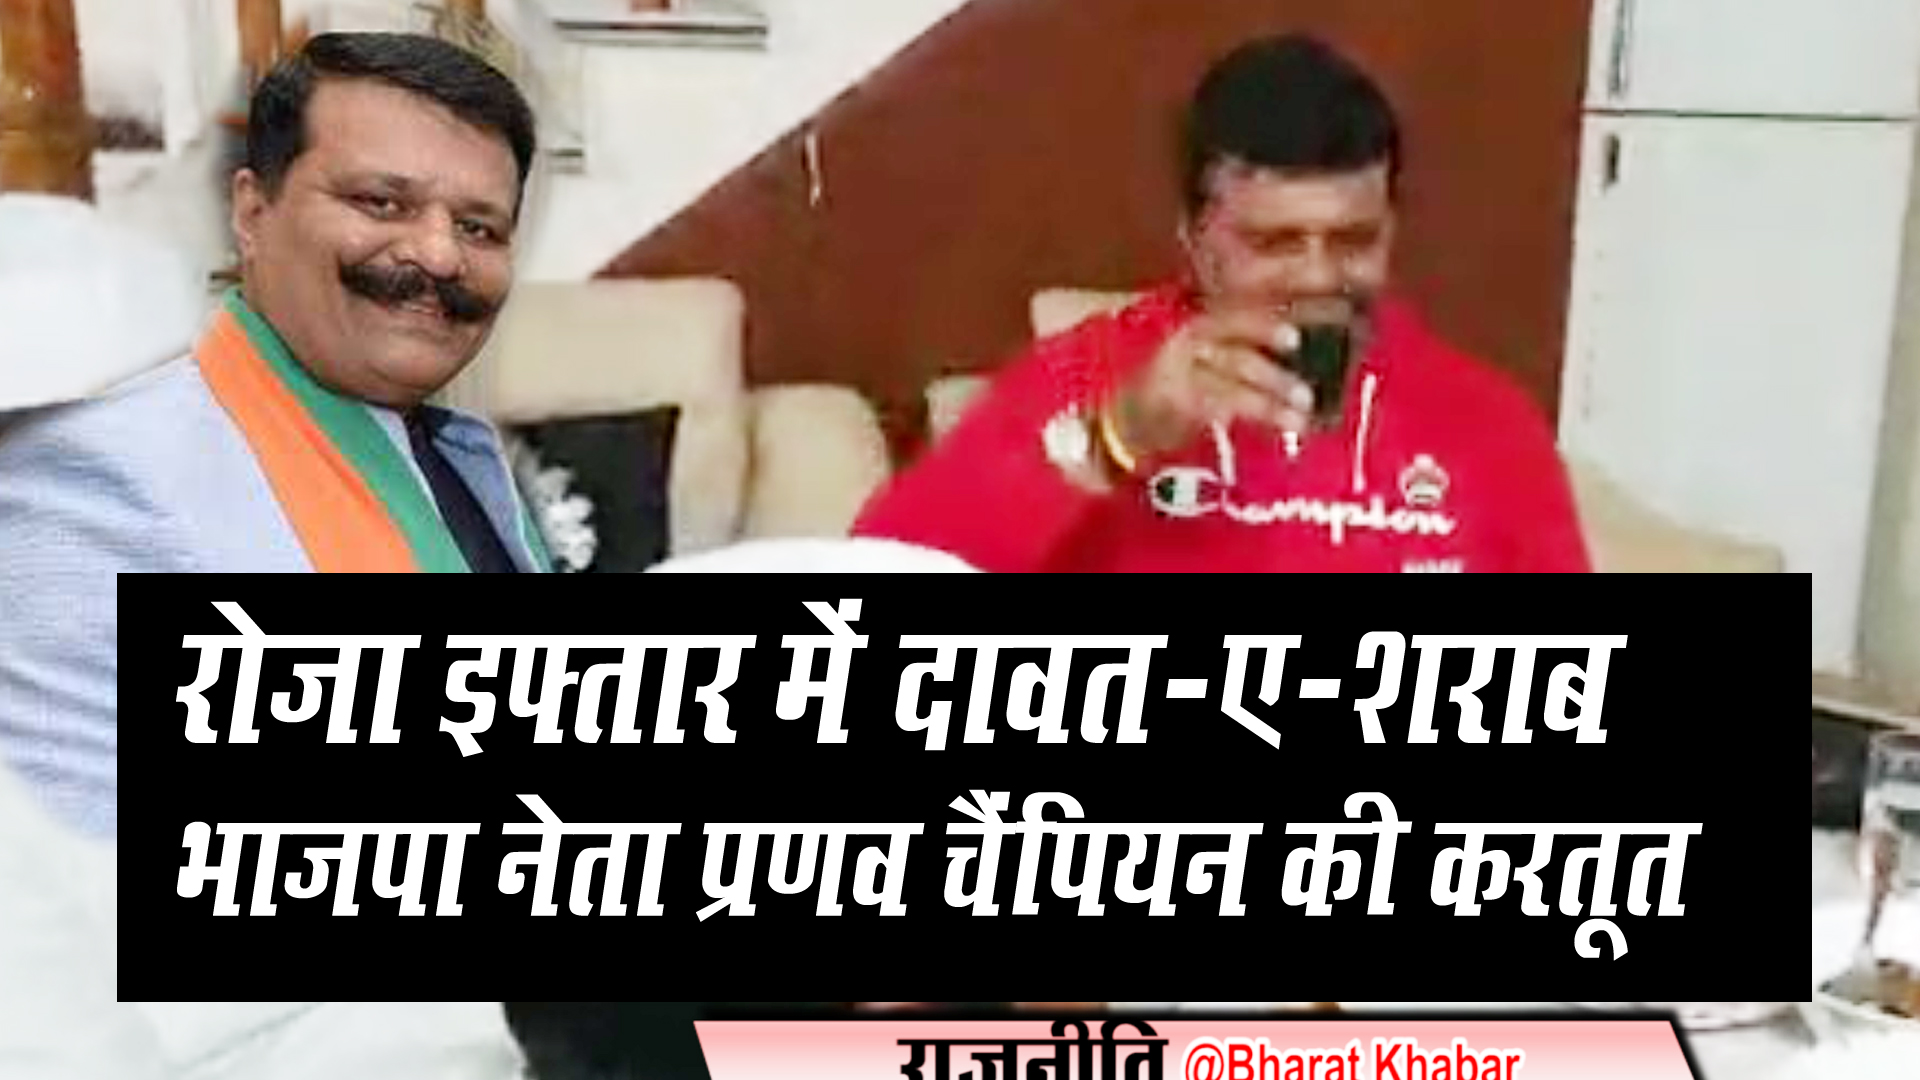 unwar pranav champion रोजा इफ्तार में शराब के साथ रोमांटिक गाना गाते नजर आए भाजपा नेता प्रणव चैंपियन